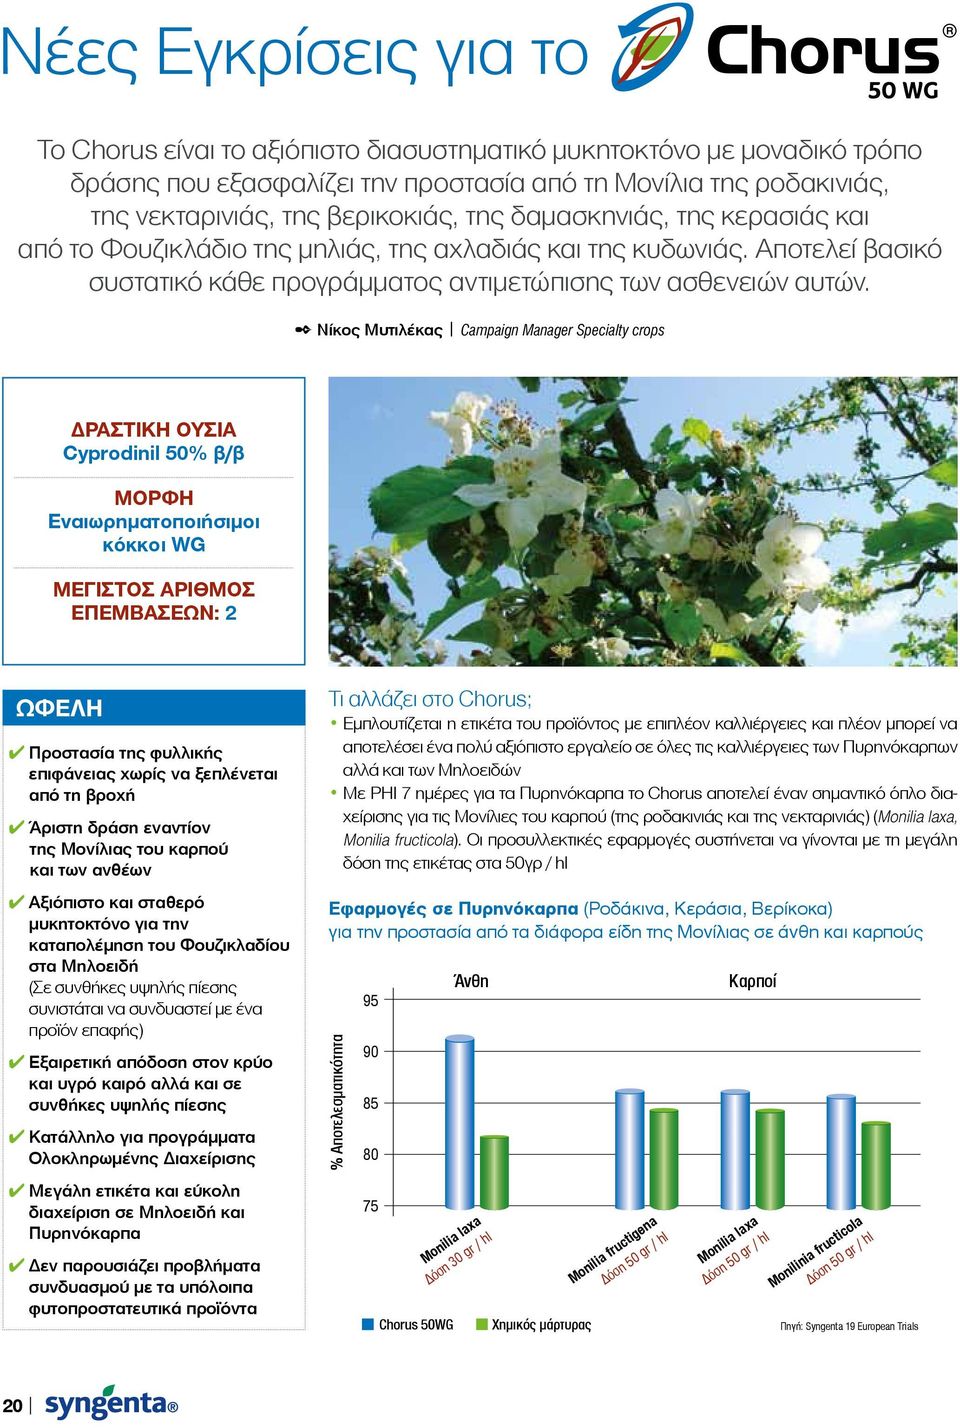 Νίκος Μυτιλέκας Campaign Manager Specialty crops ΔΡΑΣΤΙΚΗ ΟΥΣΙΑ Cyprodinil 50% β/β Μορφή Εναιωρηματοποιήσιμοι κόκκοι WG Μέγιστος αριθμός επεμβάσεων: 2 Ωφέλη προστασία της φυλλικής επιφάνειας χωρίς να